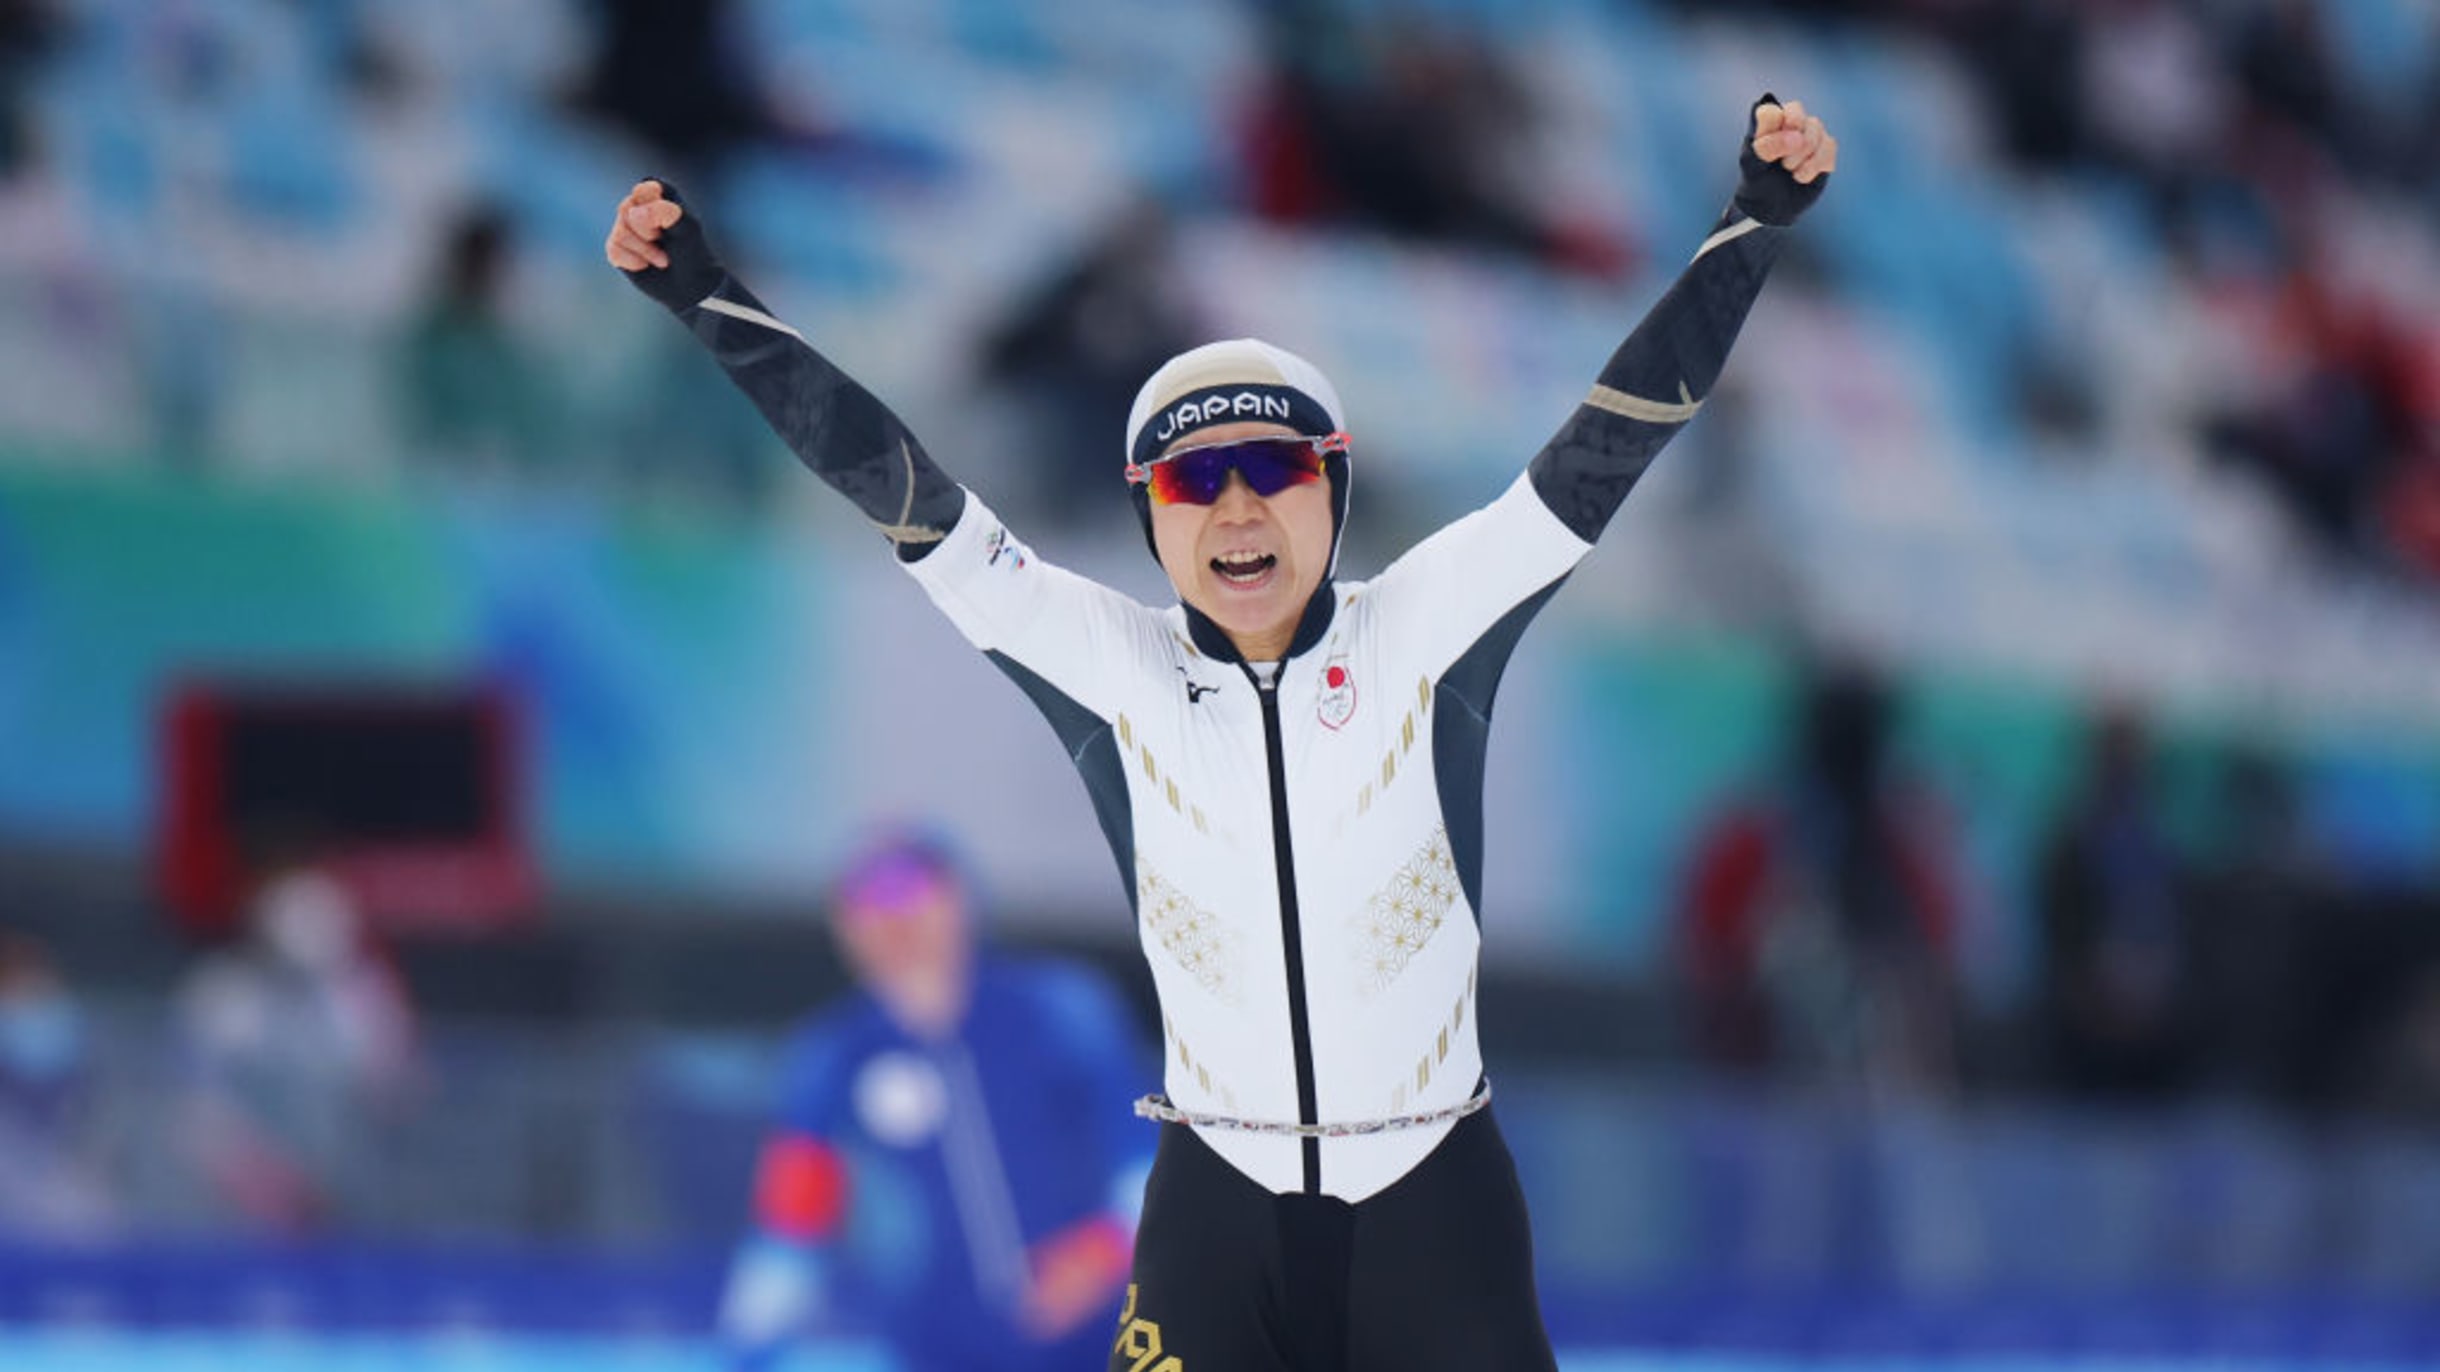 メダル決定】高木美帆が金メダル! 北京2022スピードスケート女子1000m 